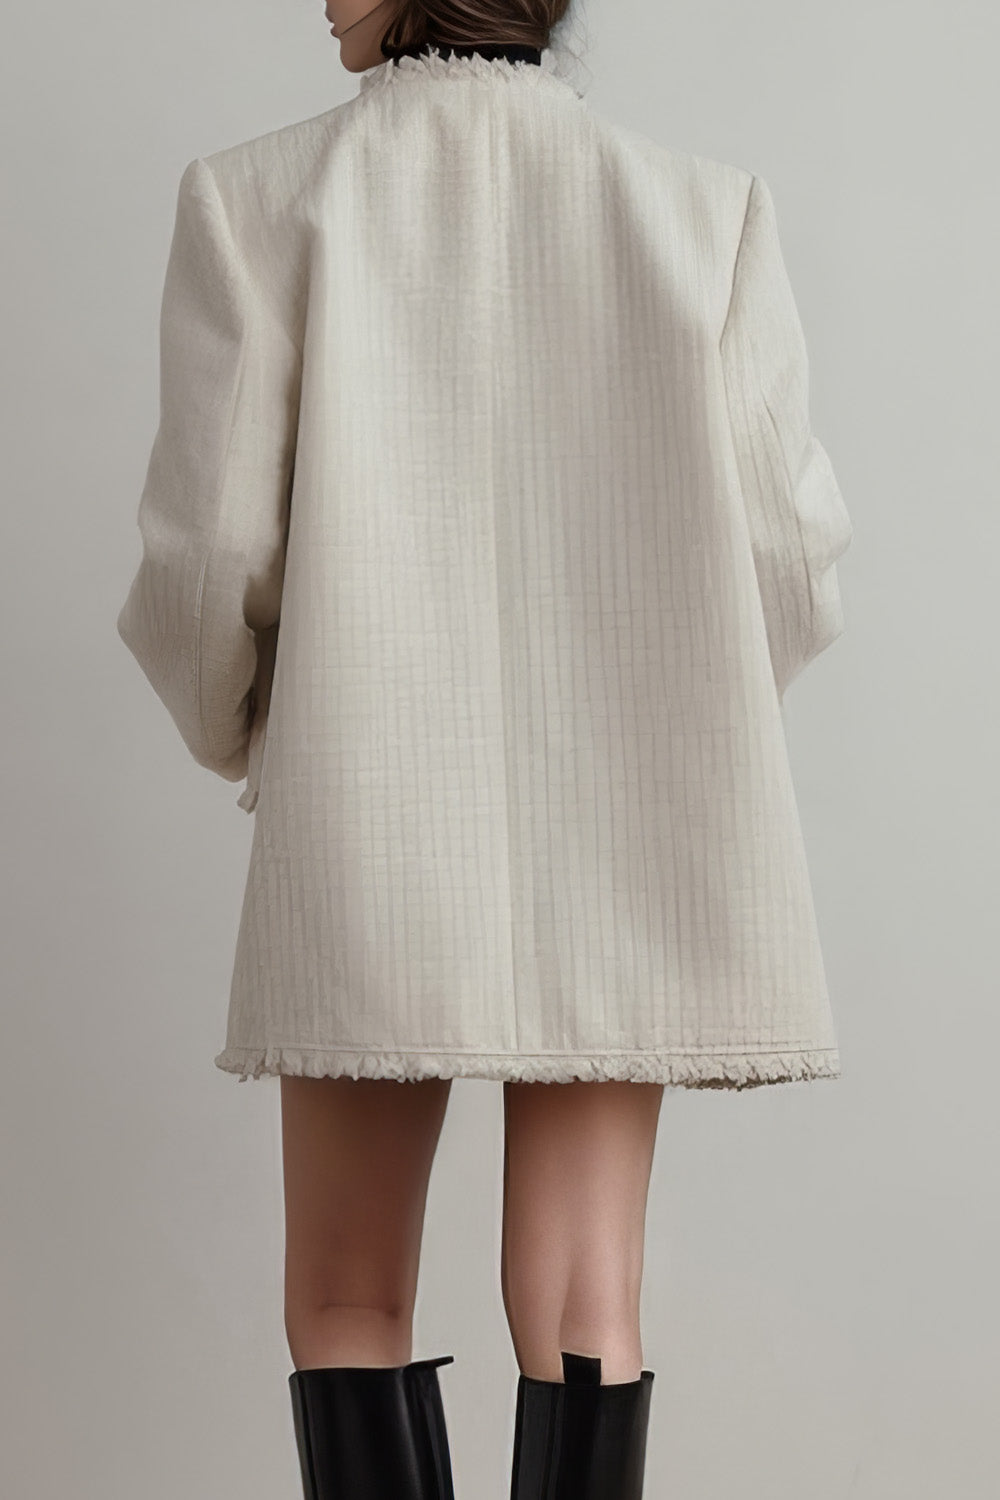 Elegante chaqueta de tweed con flecos - Blanca